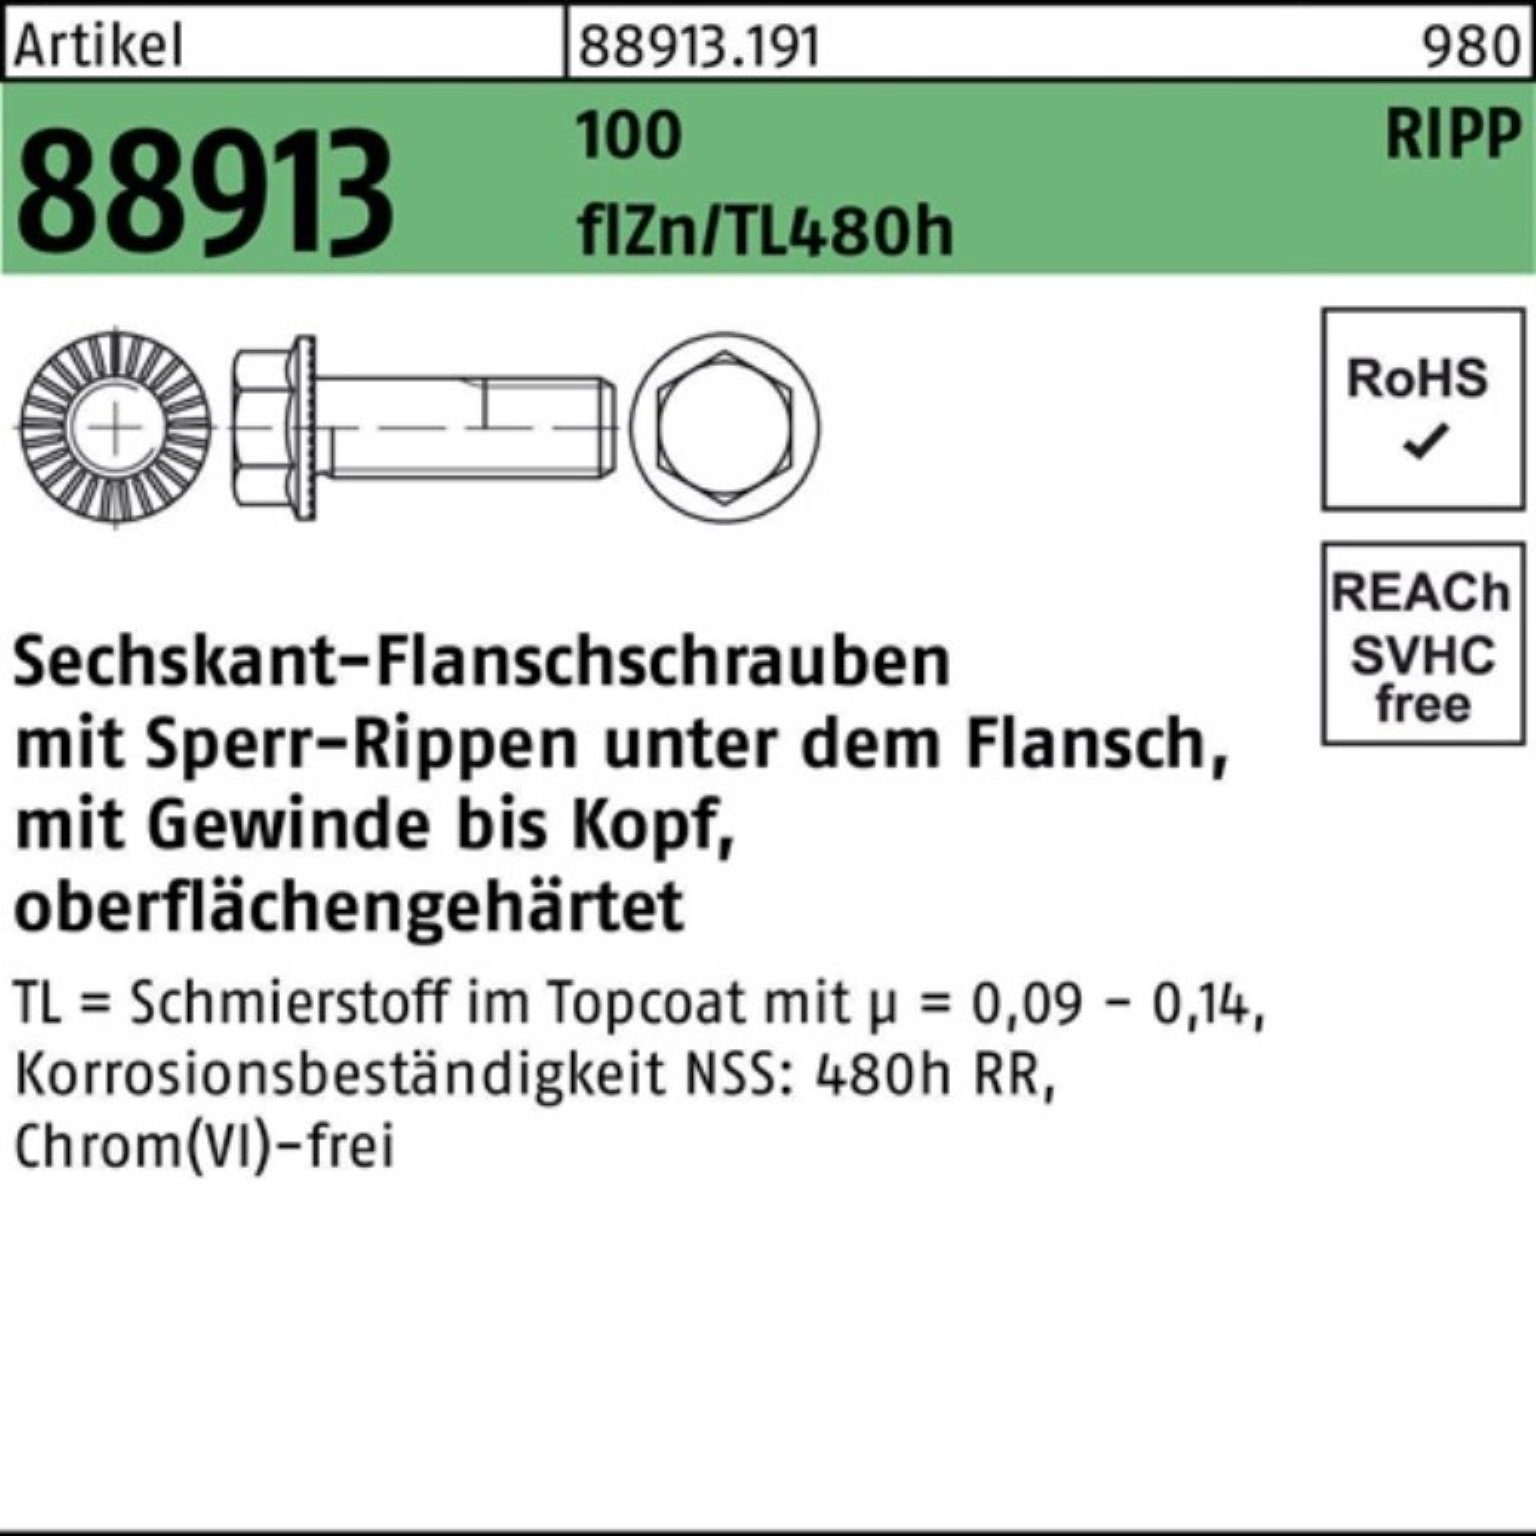 Reyher Schraube 100er 88913 M10x40 Sperr-Ripp Pack Sechskantflanschschraube f VG R 100